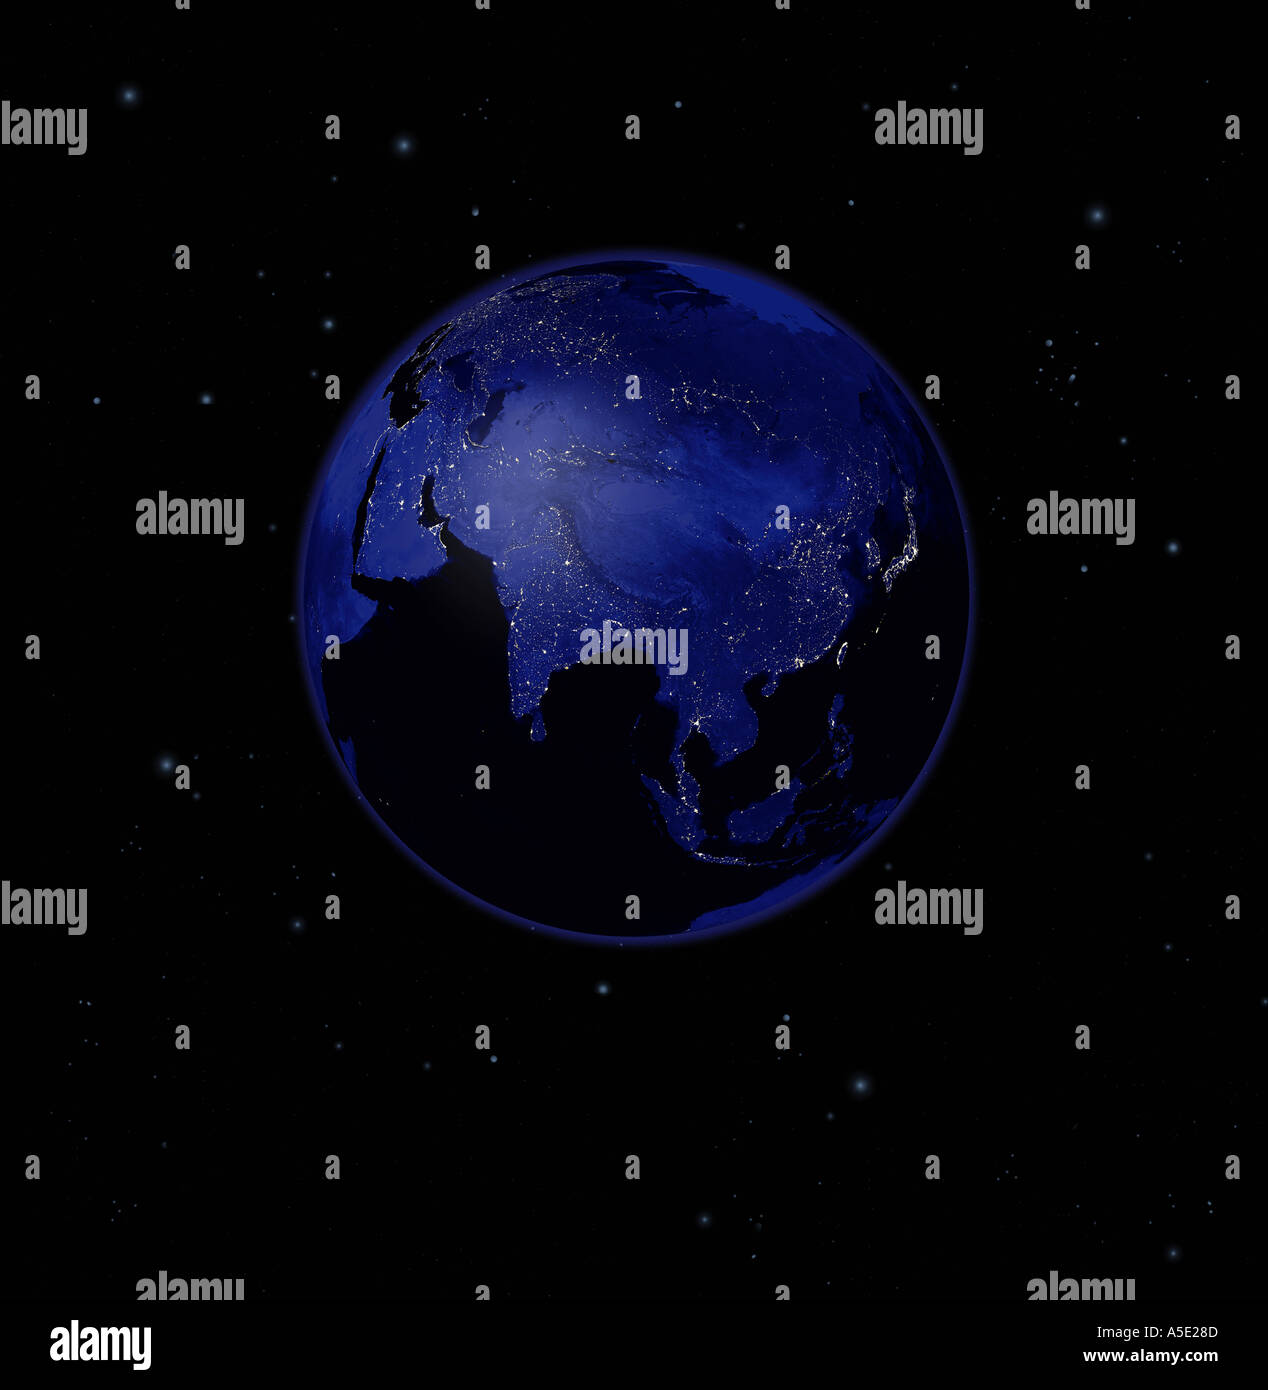 Immagine satellitare della terra piena di notte con il Sud Est Asiatico prominente luci della città visibile la Terra dallo spazio Foto Stock